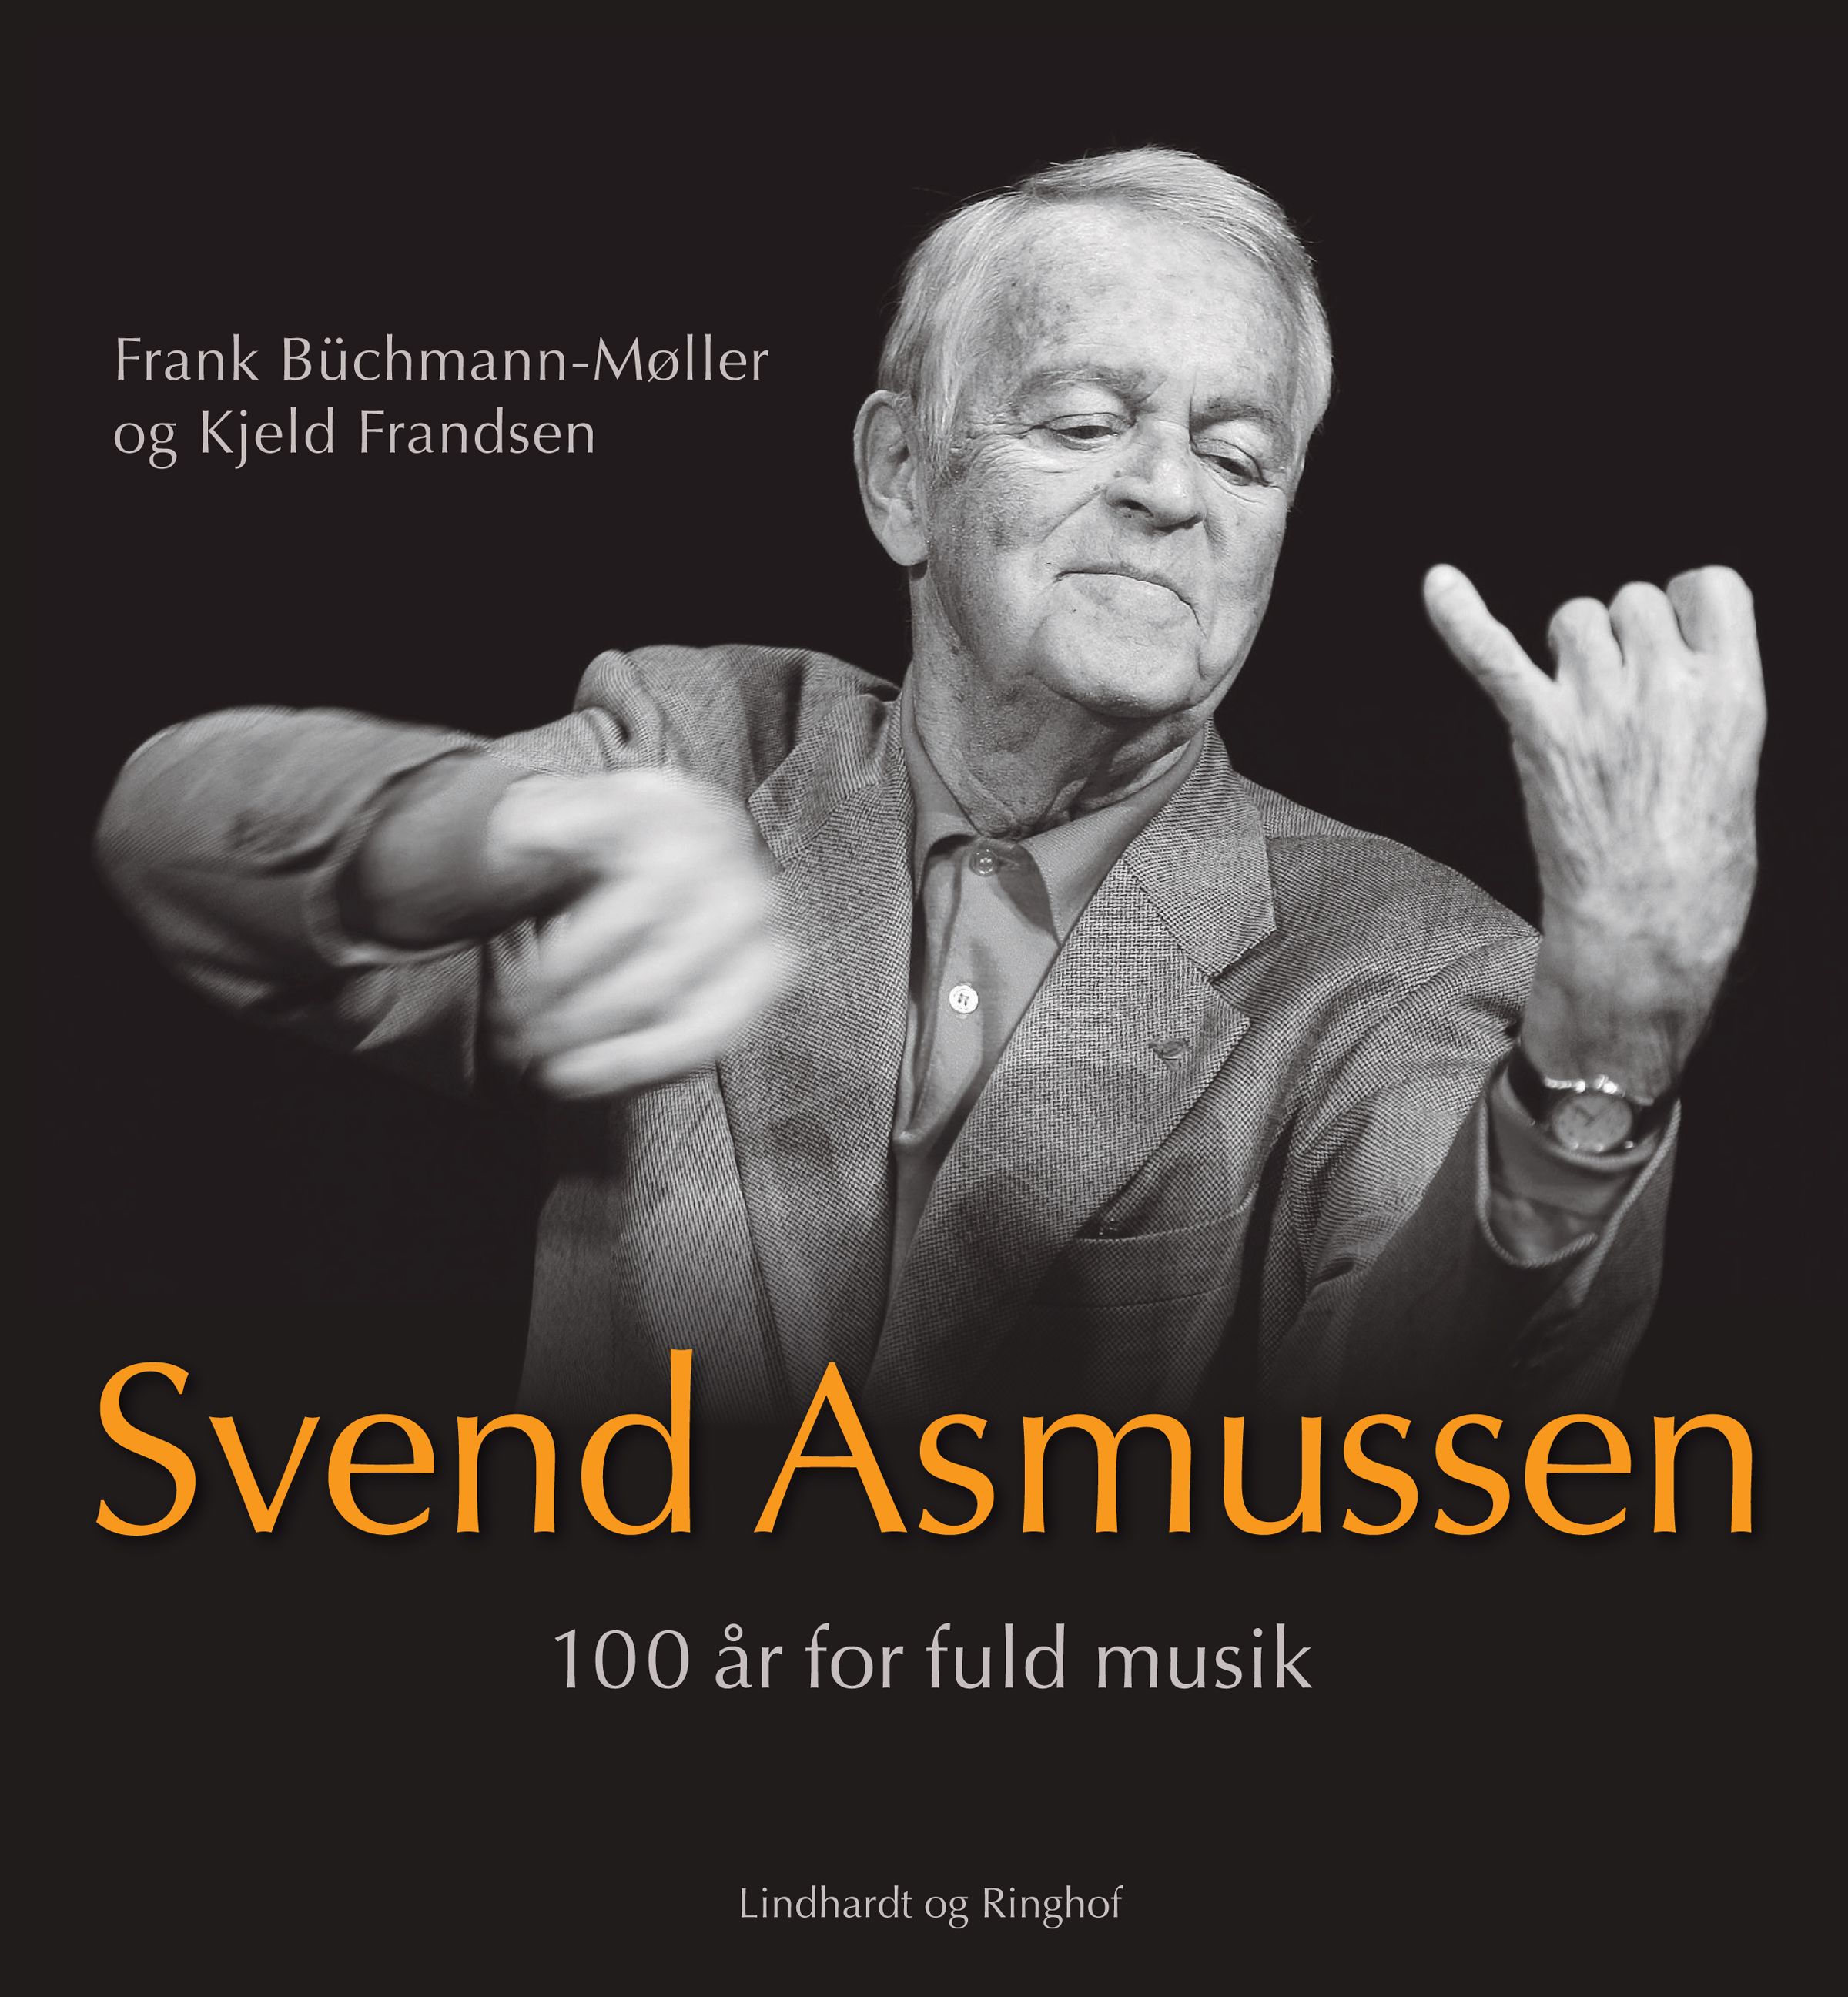 Svend Asmussen. 100 år for fuld musik, e-bok av Frank Büchmann-Møller, Kjeld Frandsen